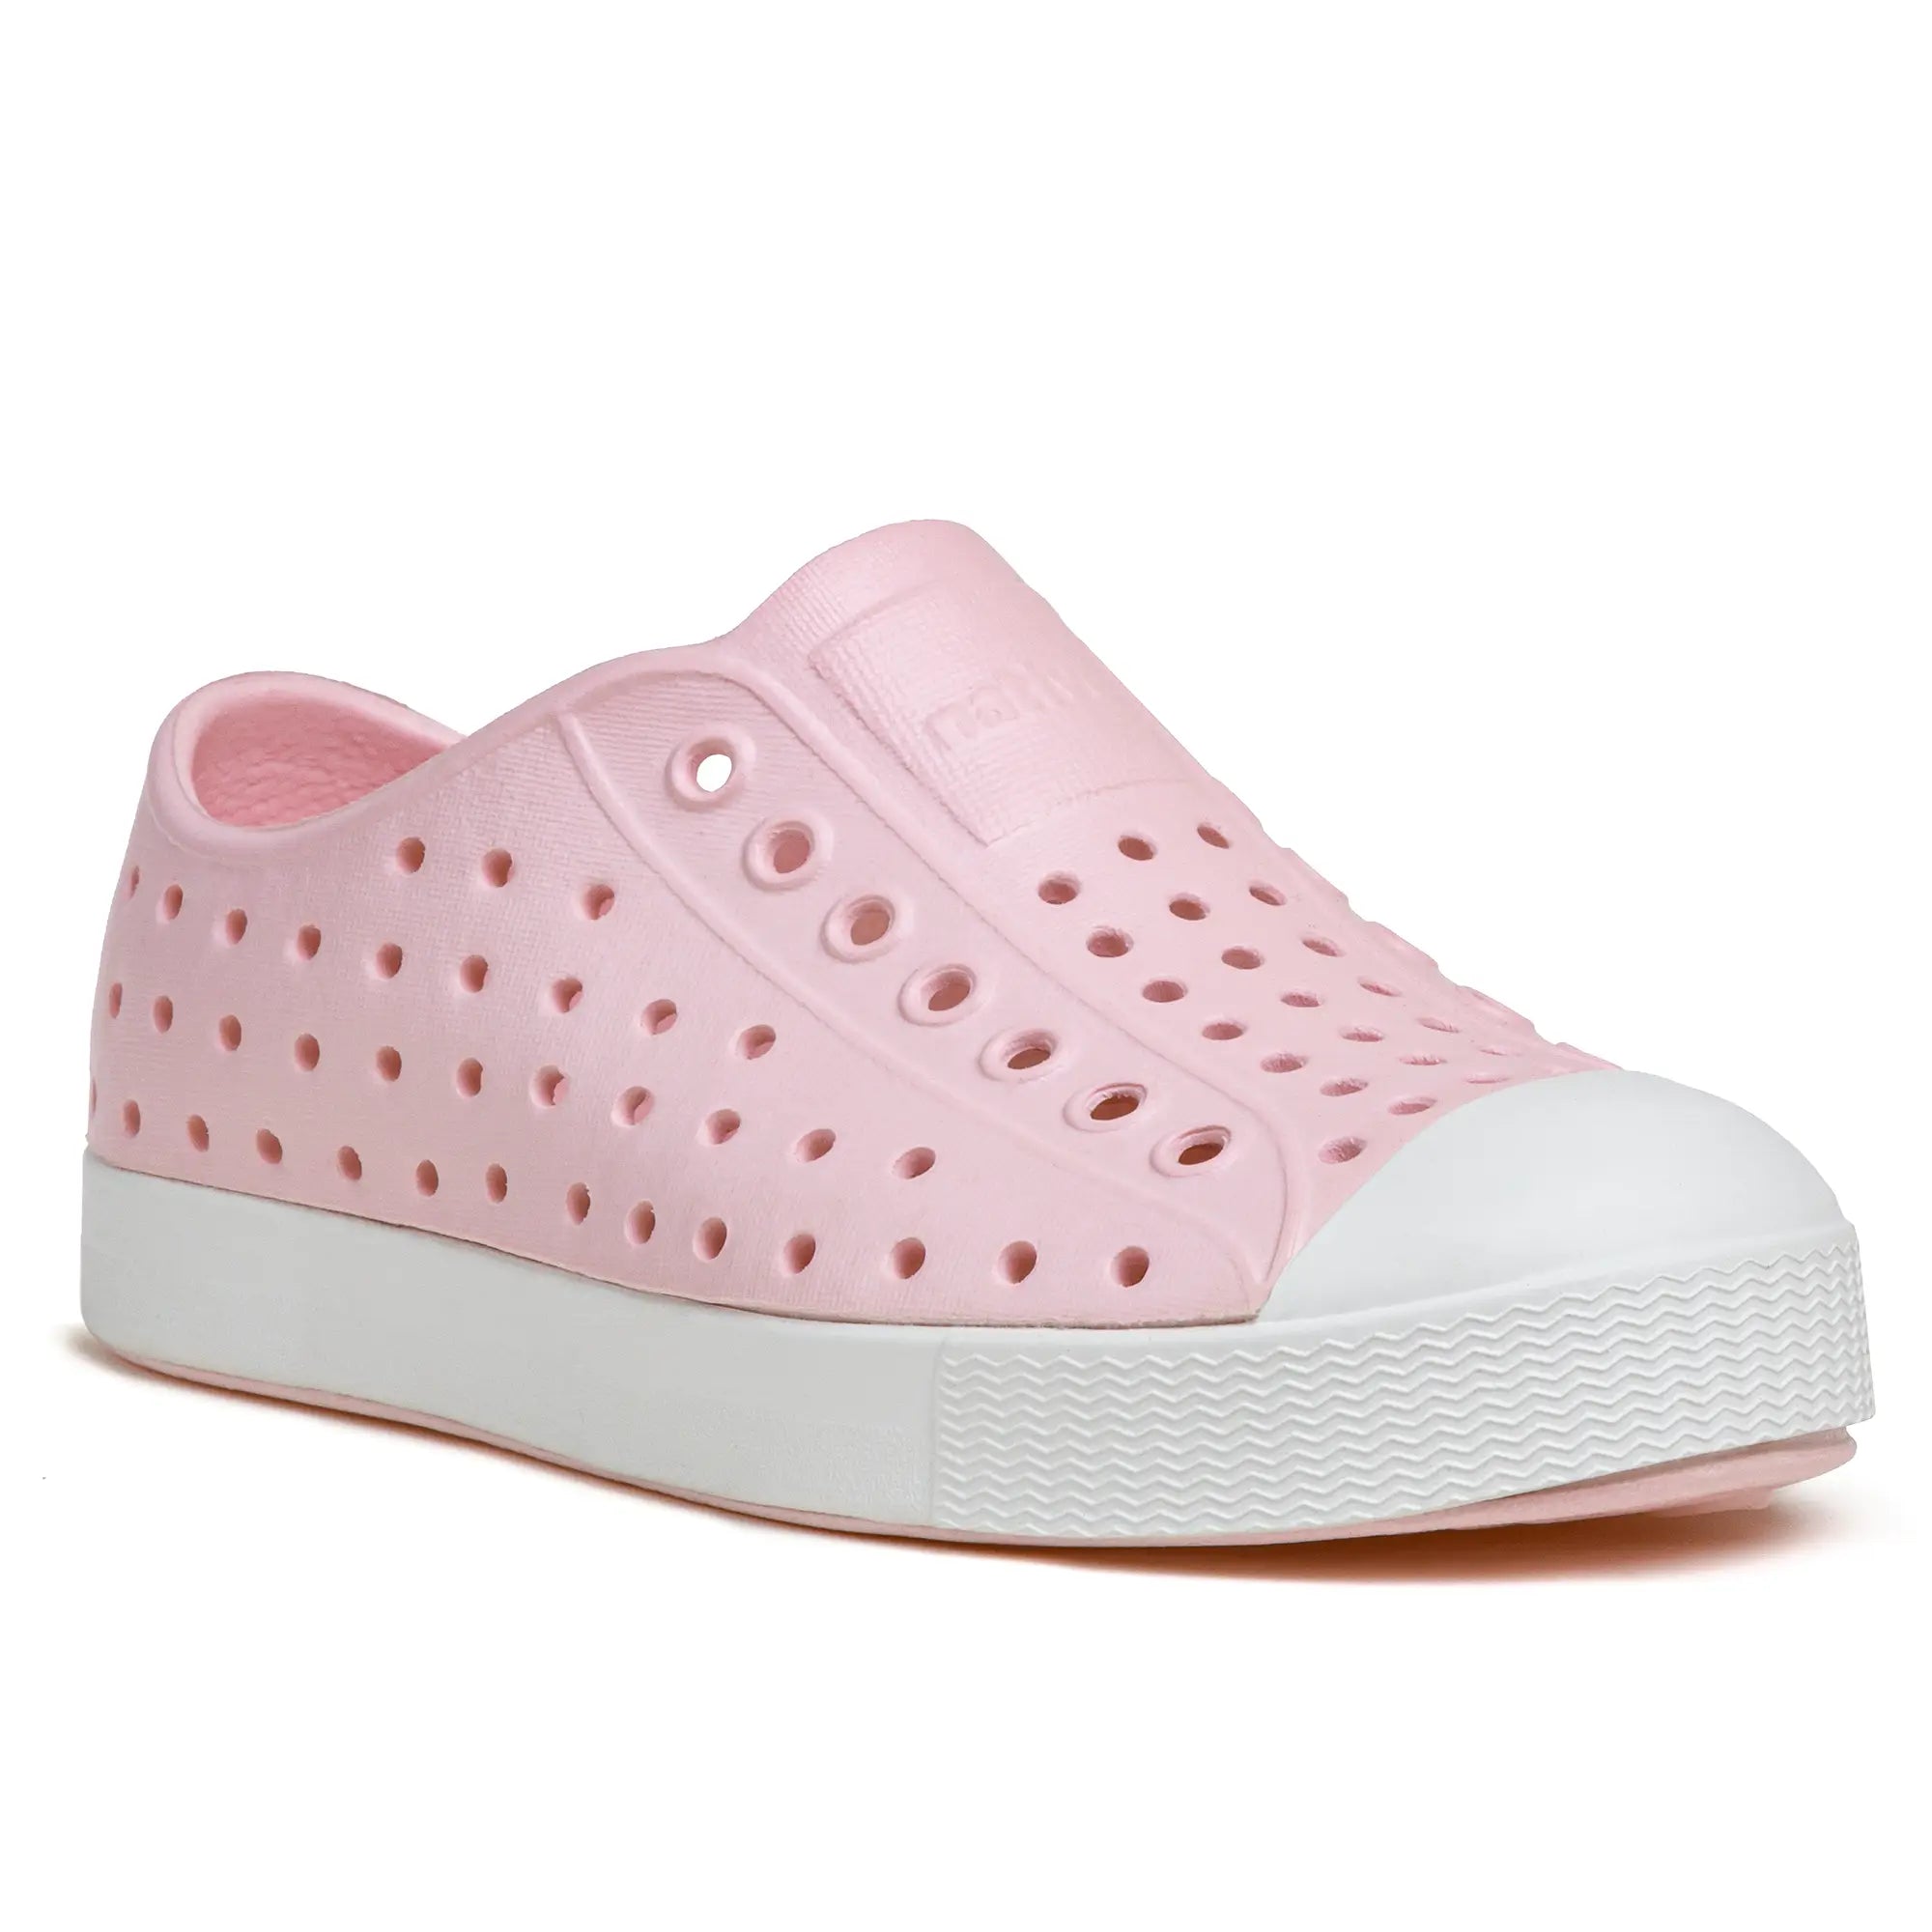 Toddler Jefferson Water shoe - Pink